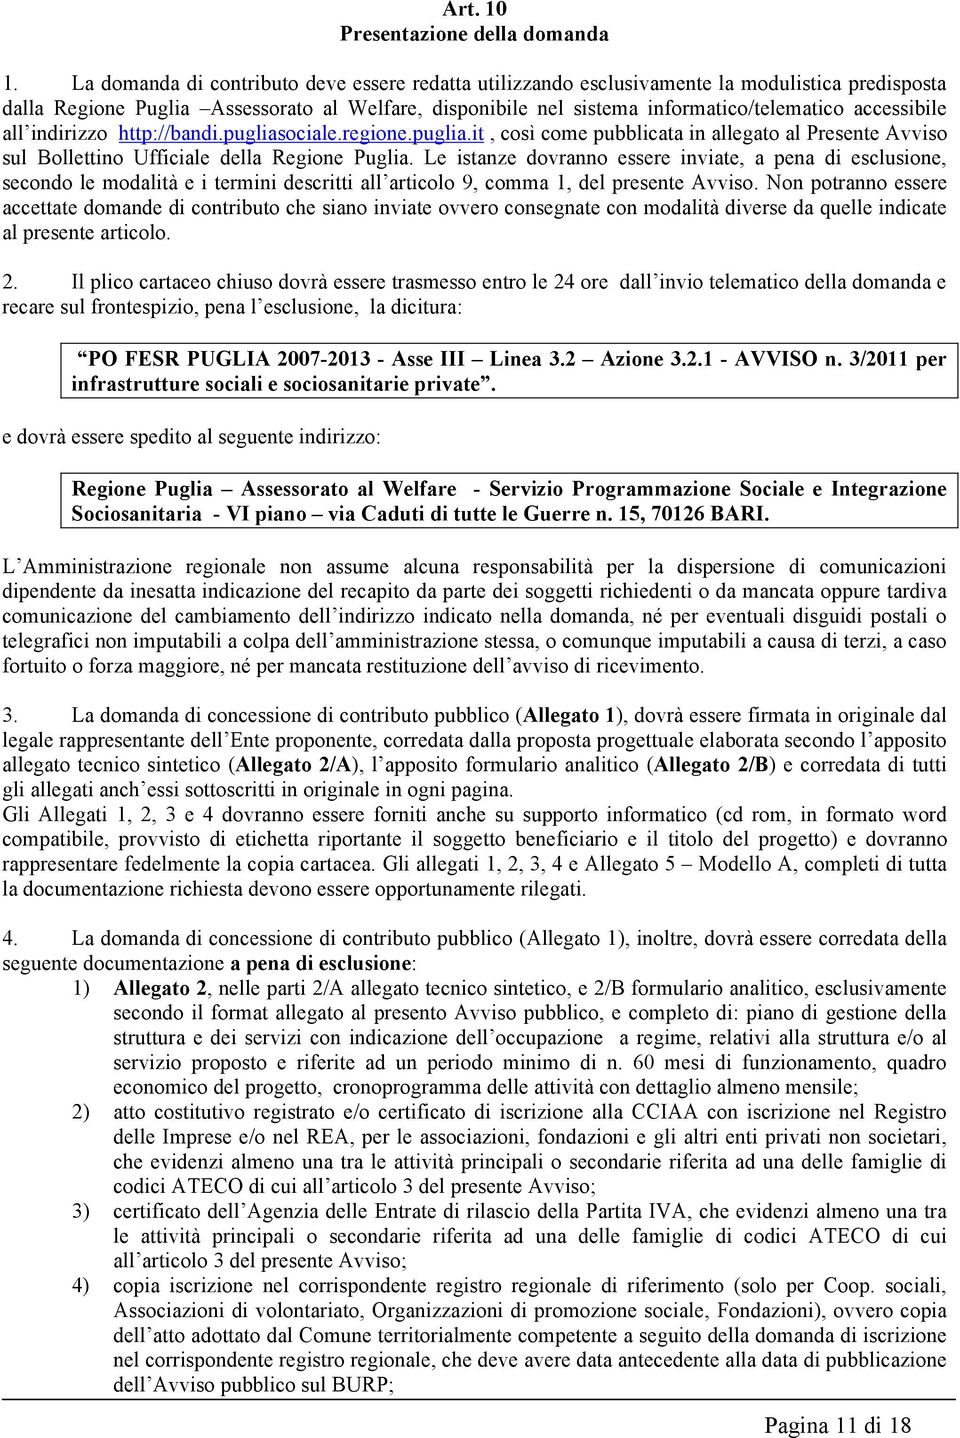 accessibile all indirizzo http://bandi.pugliasociale.regione.puglia.it, così come pubblicata in allegato al Presente Avviso sul Bollettino Ufficiale della Regione Puglia.